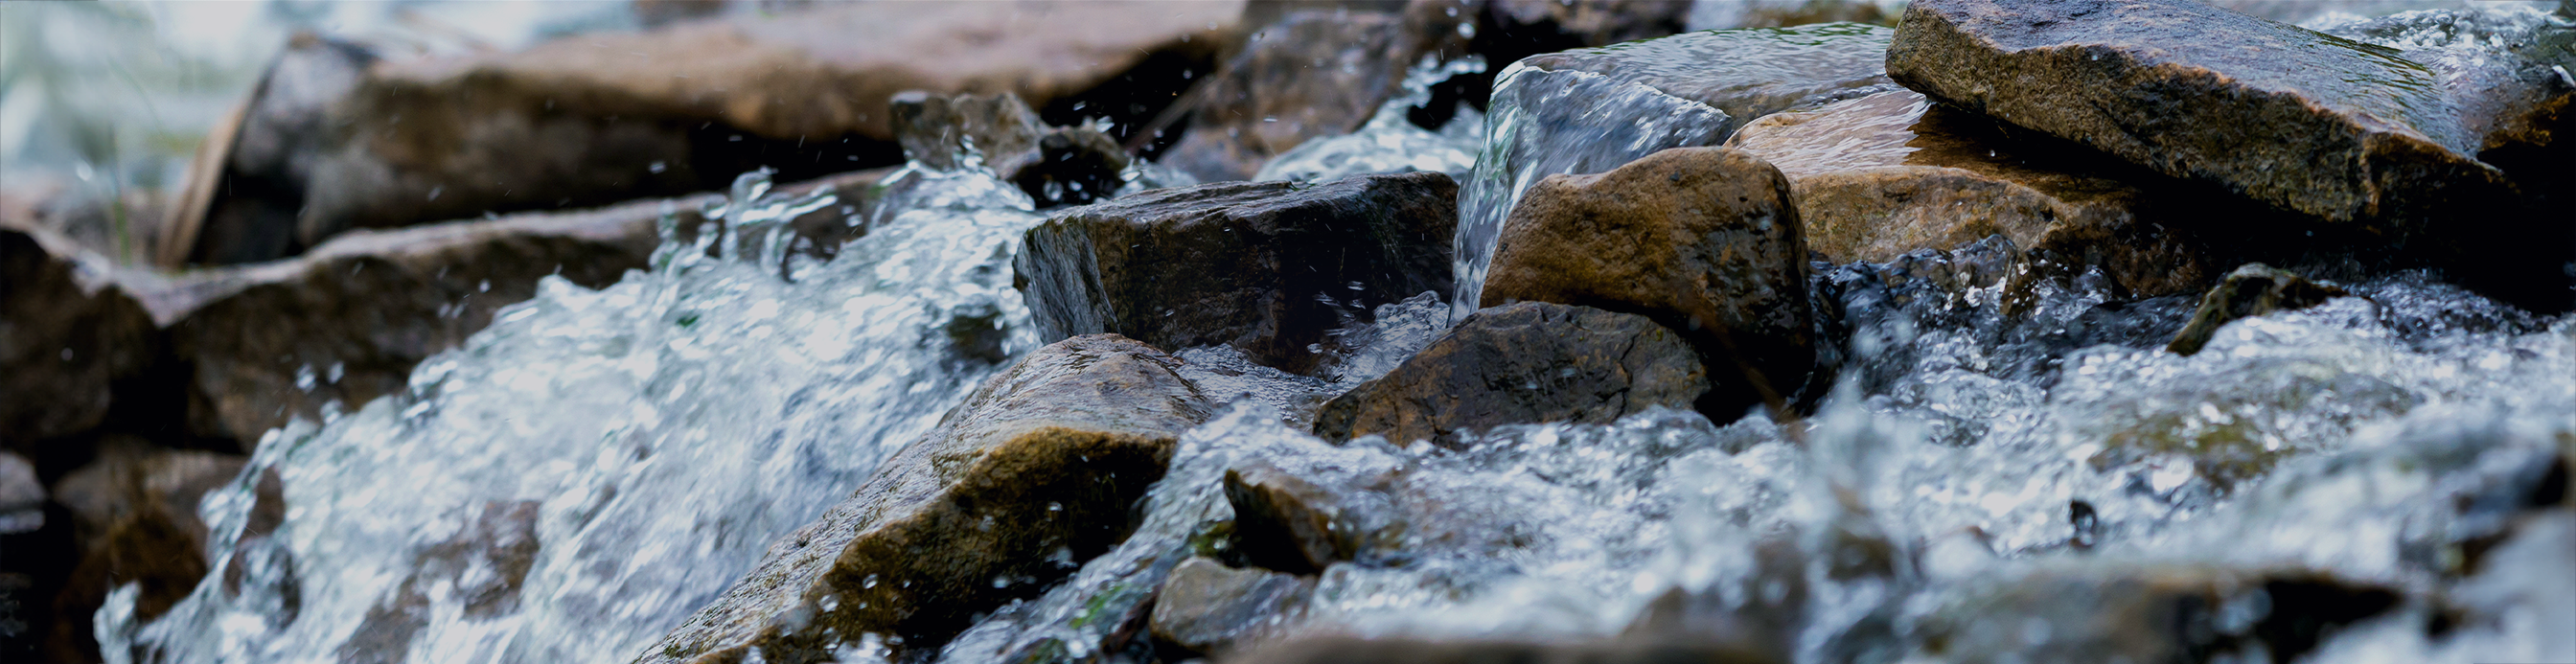 Levissima è un'acqua minerale naturale fresca, leggera e incontaminata